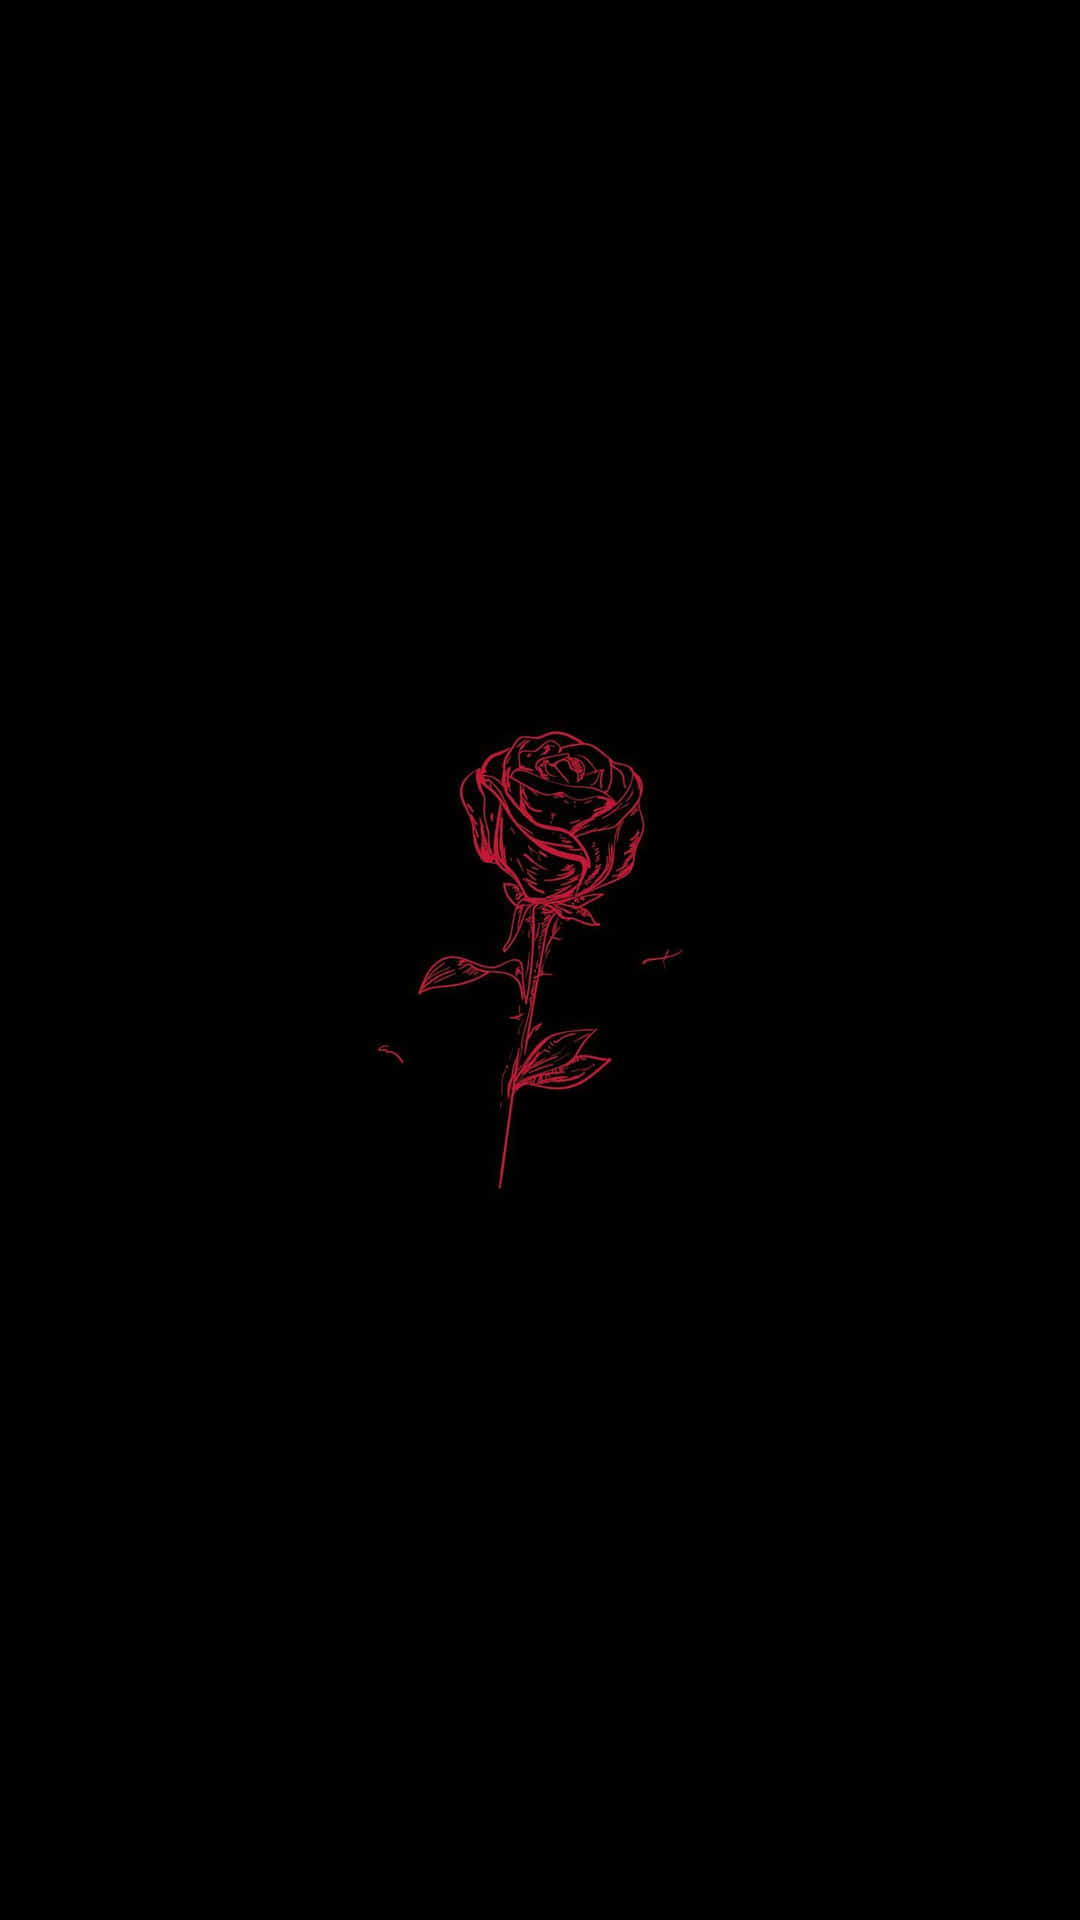 Einerote Rose Auf Einem Schwarzen Hintergrund